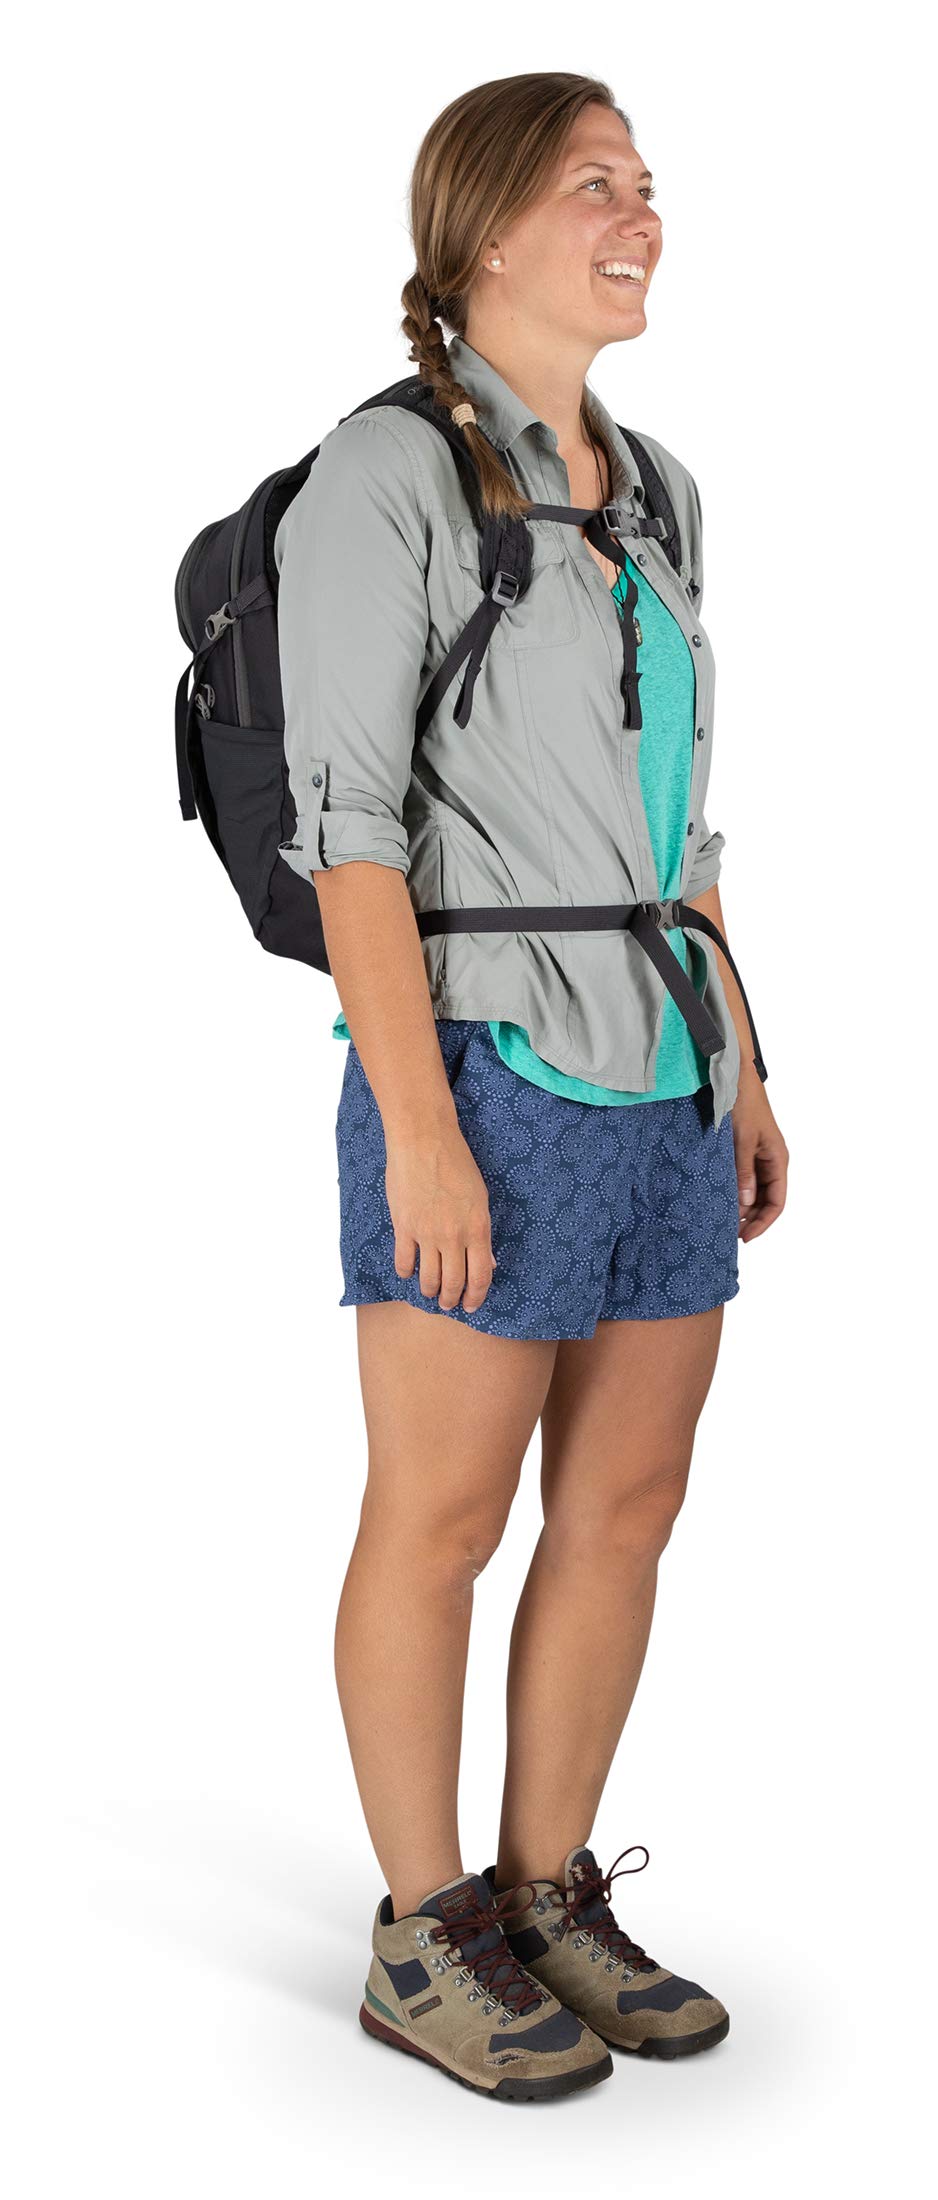 Osprey Farpoint 40L Men's Travel Backpack Daylite Plus Everyday Backpack Bundle